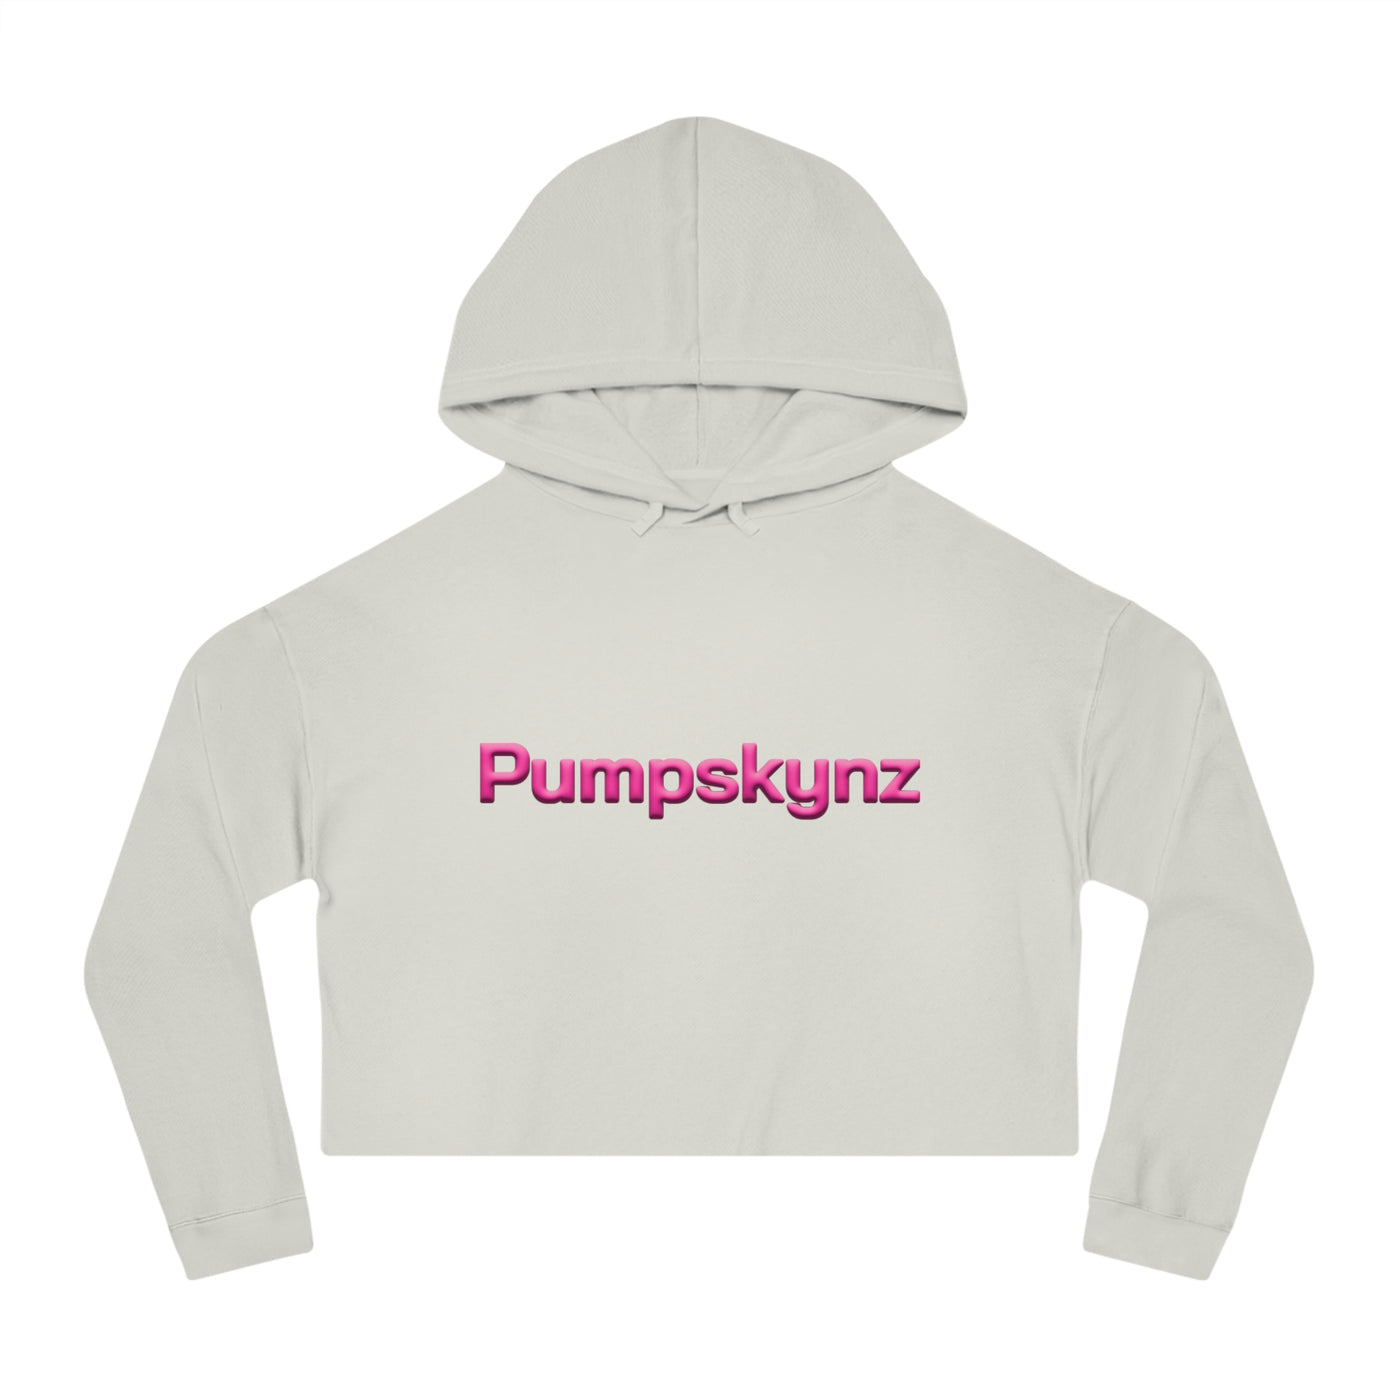 Pumpskynz Women’s Cropped Hooded Sweatshirt